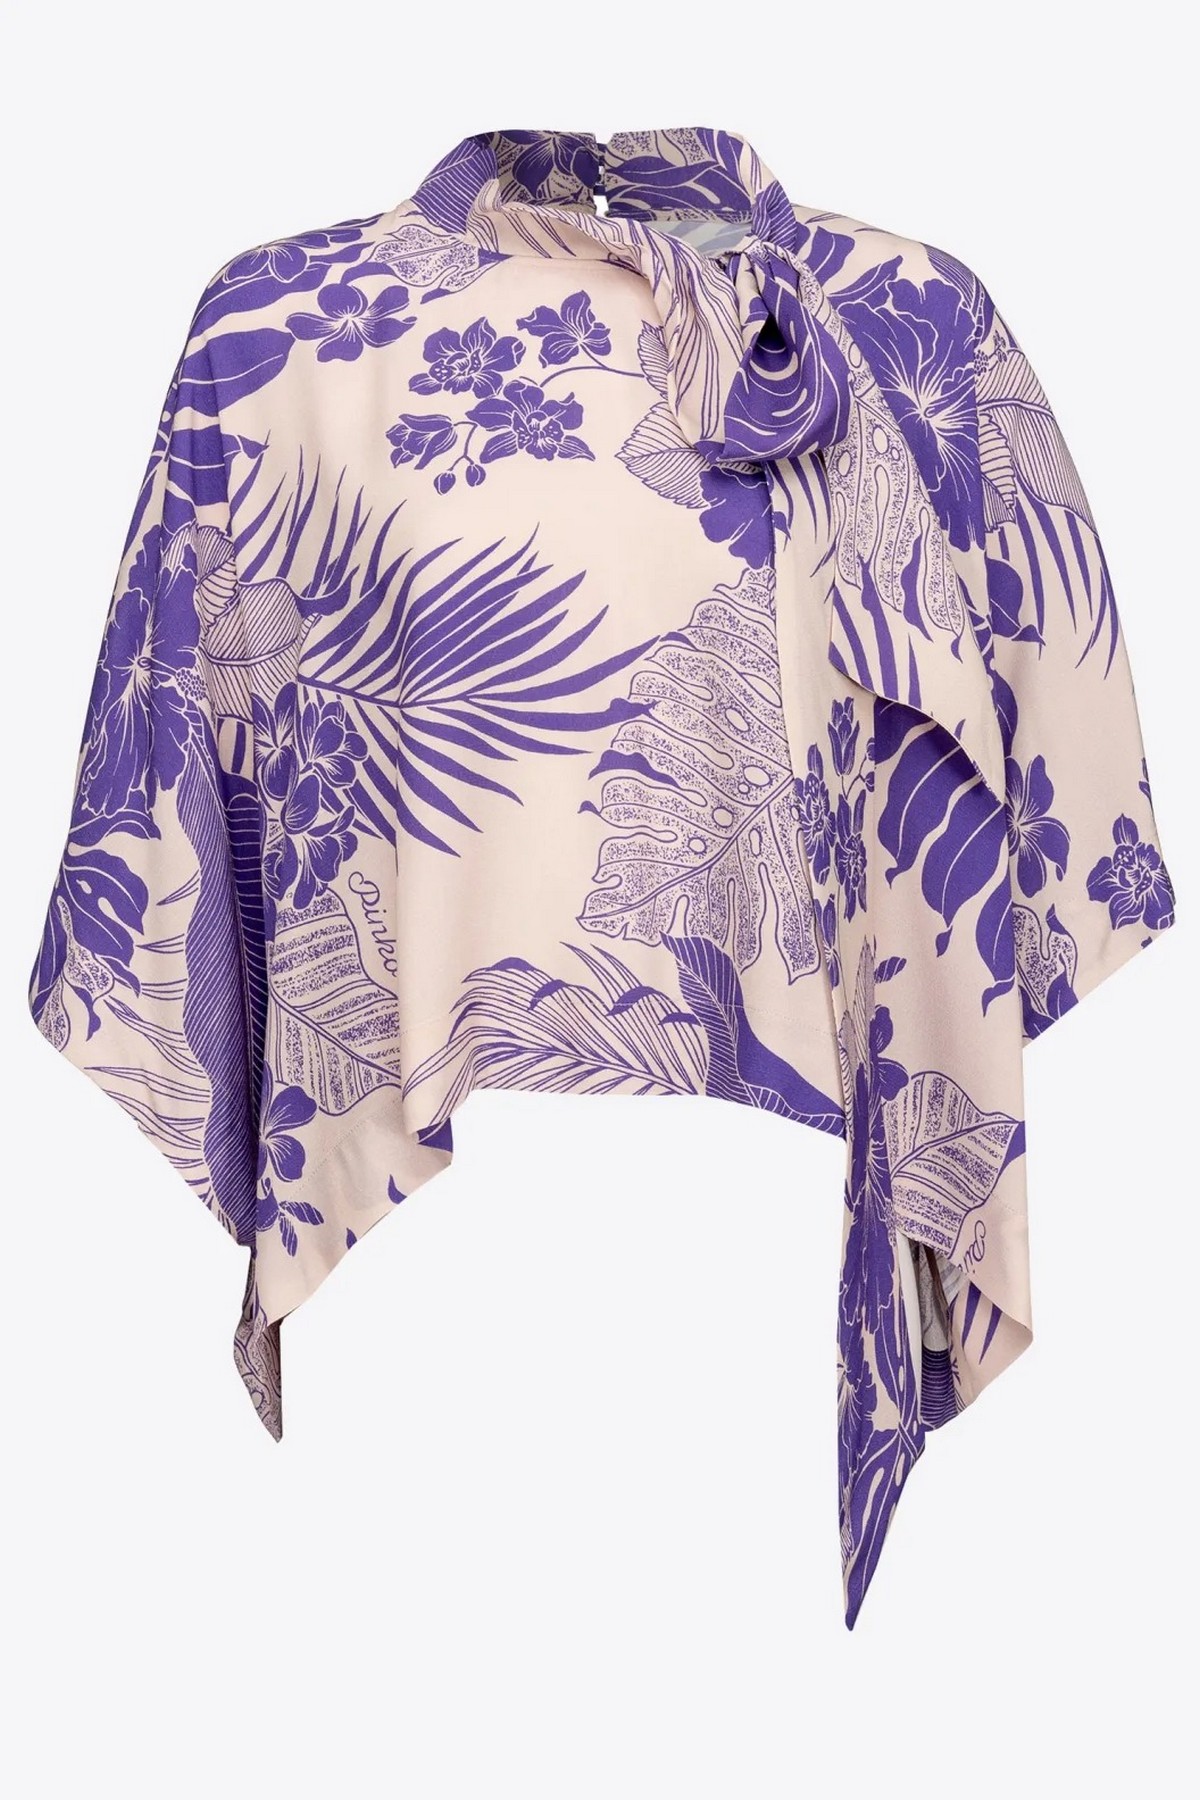 Bloes ponchostyle sjaal in de kleur  van het merk Pinko